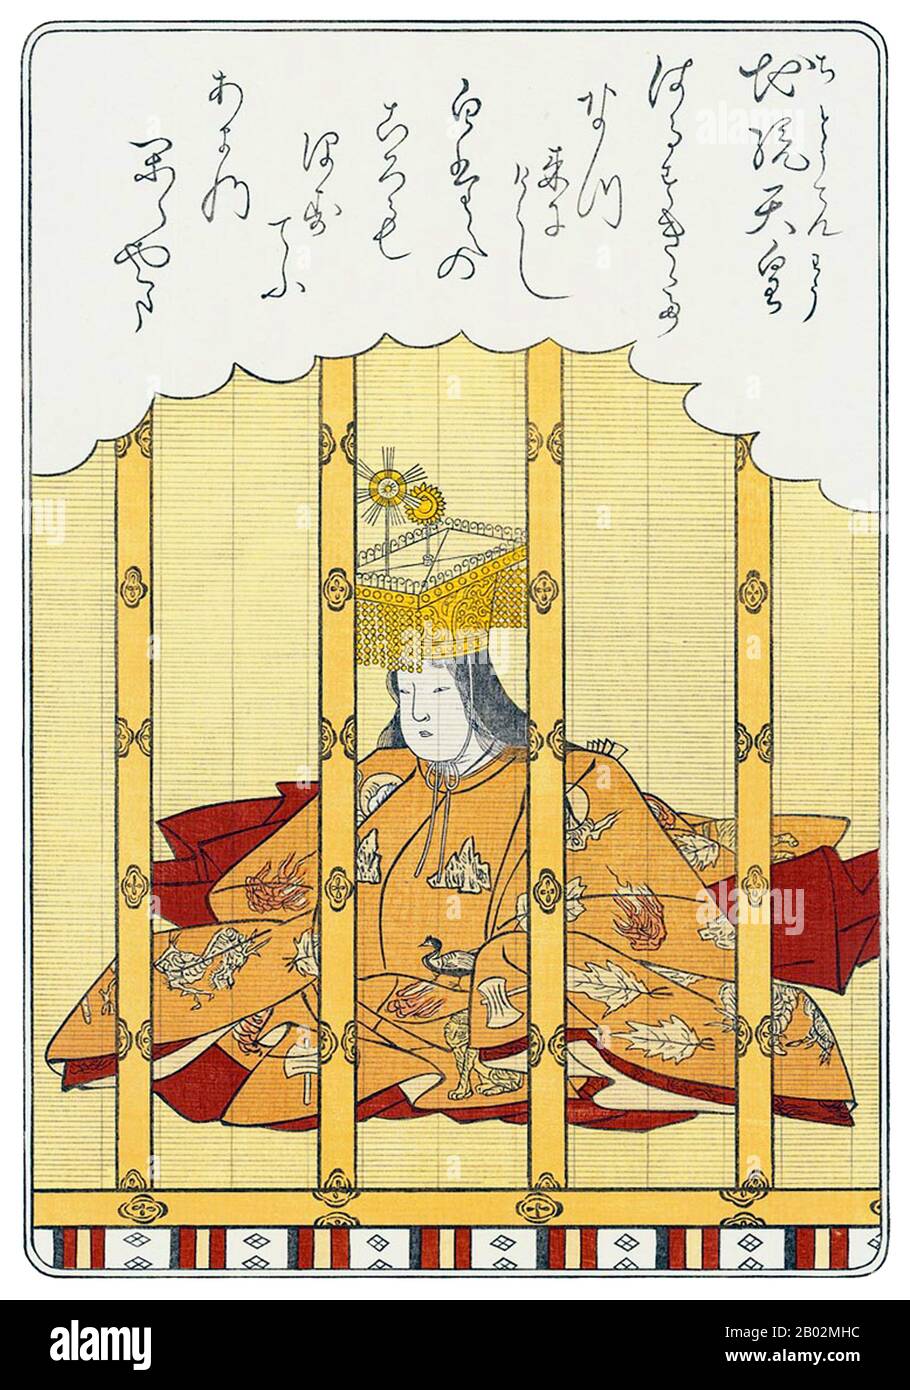 Empress Jitō (持統天皇 Jitō-tennō, 645 – 13 janvier 703) était le 41ème monarque du Japon, selon l'ordre traditionnel de succession. Le règne de Jitō couvrait les années de 686 à 697. Dans l'histoire du Japon, Jitō était le troisième des huit femmes à assumer le rôle de la femme d'impératrice. Les deux monarques féminins avant Jitō étaient (1) Suiko et (2) Kōgyoku/Saimei. Les cinq femmes souverains régnant après Jitō étaient (3) Gemmei, (4) Genshō, (5) Kōken/Shōtoku, (6) Meishō et (7) Go-Sakuramachi. Jitō a pris la responsabilité de l'administration judiciaire après la mort de son mari, l'empereur Temmu, qui était al Banque D'Images